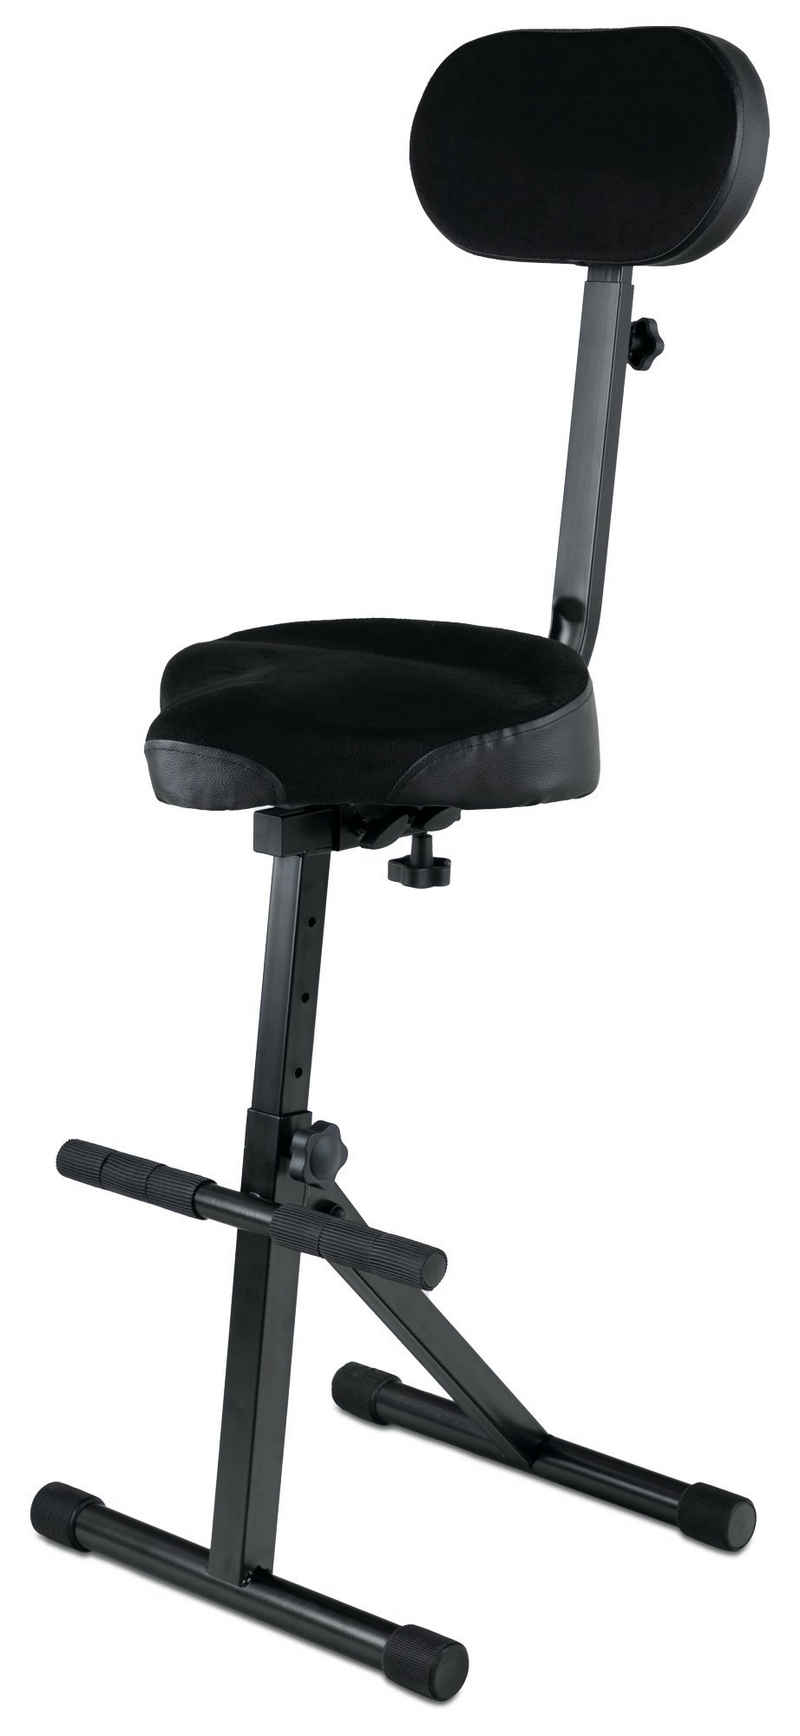 Classic Cantabile Stehhilfe ST-200 PRO Stehhilfe Stehstuhl Stehsitz Bügelstuhl (massives Stahlgestell, Gummifüßen, Sitzhöhe 5-stufig, 57 - 81 cm einstellbar, Sitzfläche BxHxT: 41 x 8,5 x 37 cm) schwarz